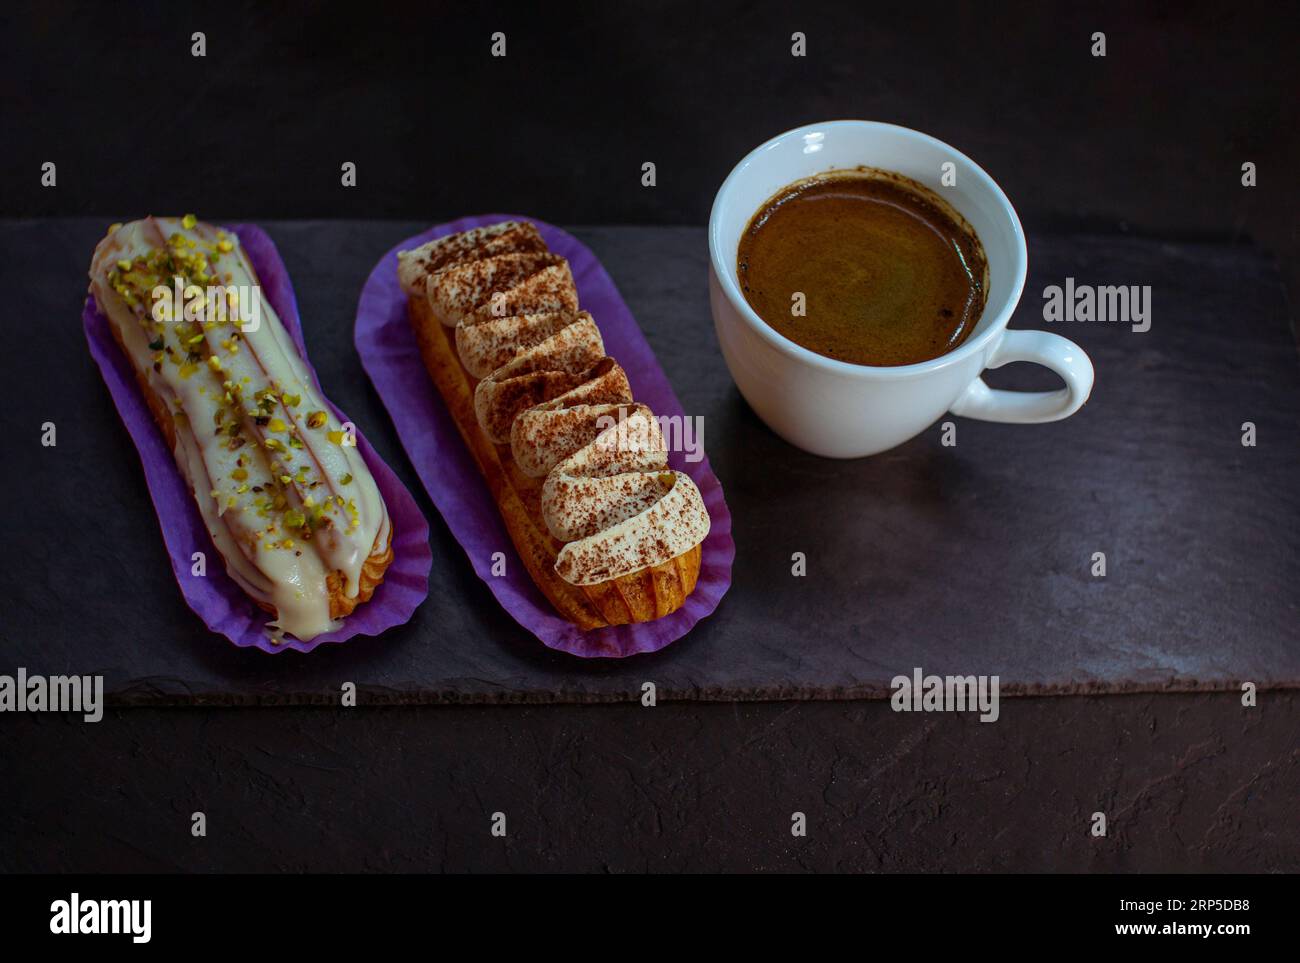 Tazza di caffè e deliziose torte eclair - tiramisù e pistacchio aromatizzati con panna, glassa e noci tritate, su fondo nero. Foto Stock